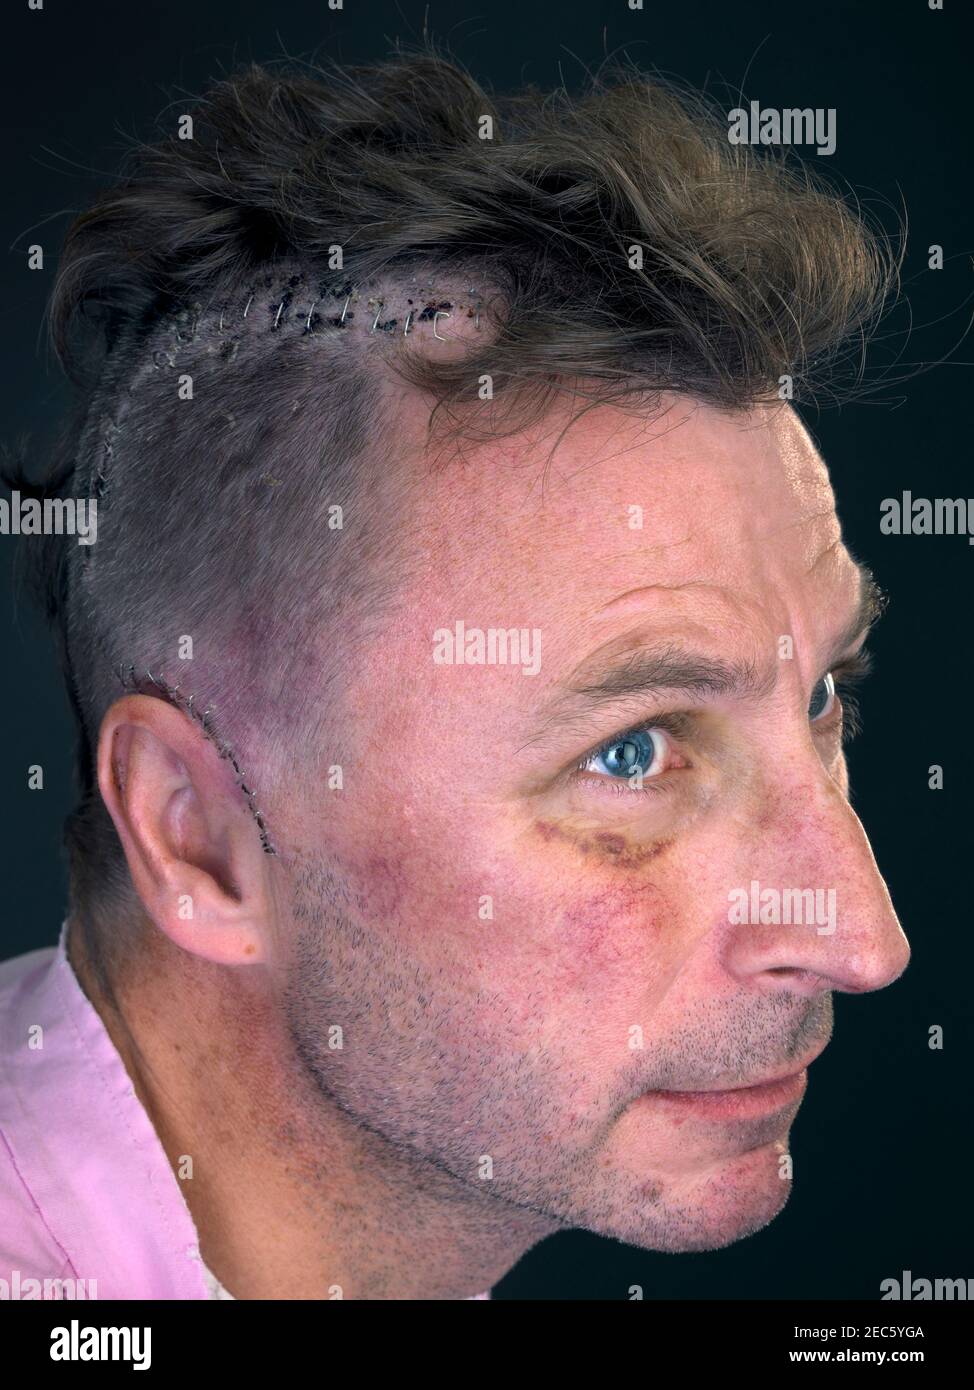 homme à tête rasée révélant une incision agrafée après une chirurgie cérébrale Banque D'Images